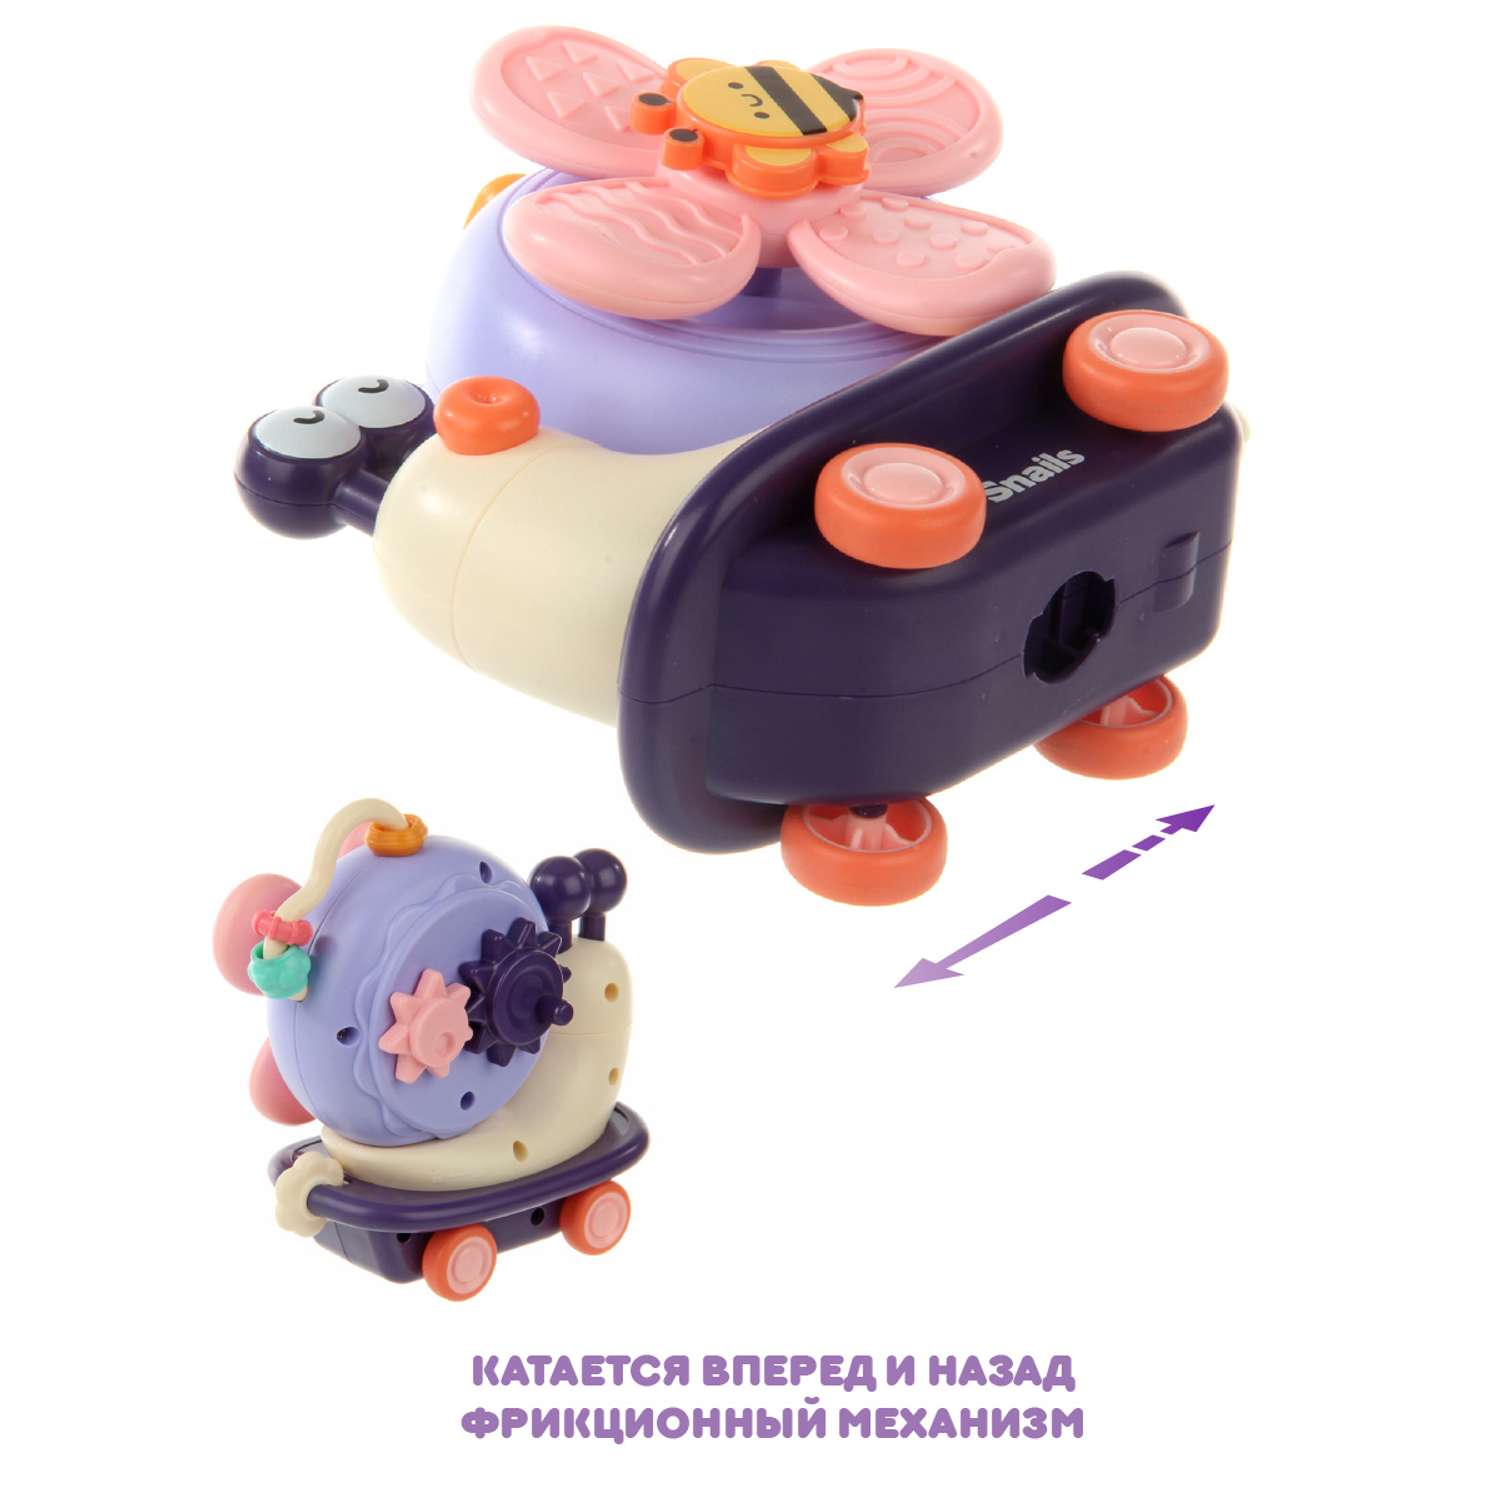 Развивающая игрушка Ути Пути 2 в 1 спиннер и покатушка на присоске Мадам Улитка - фото 5